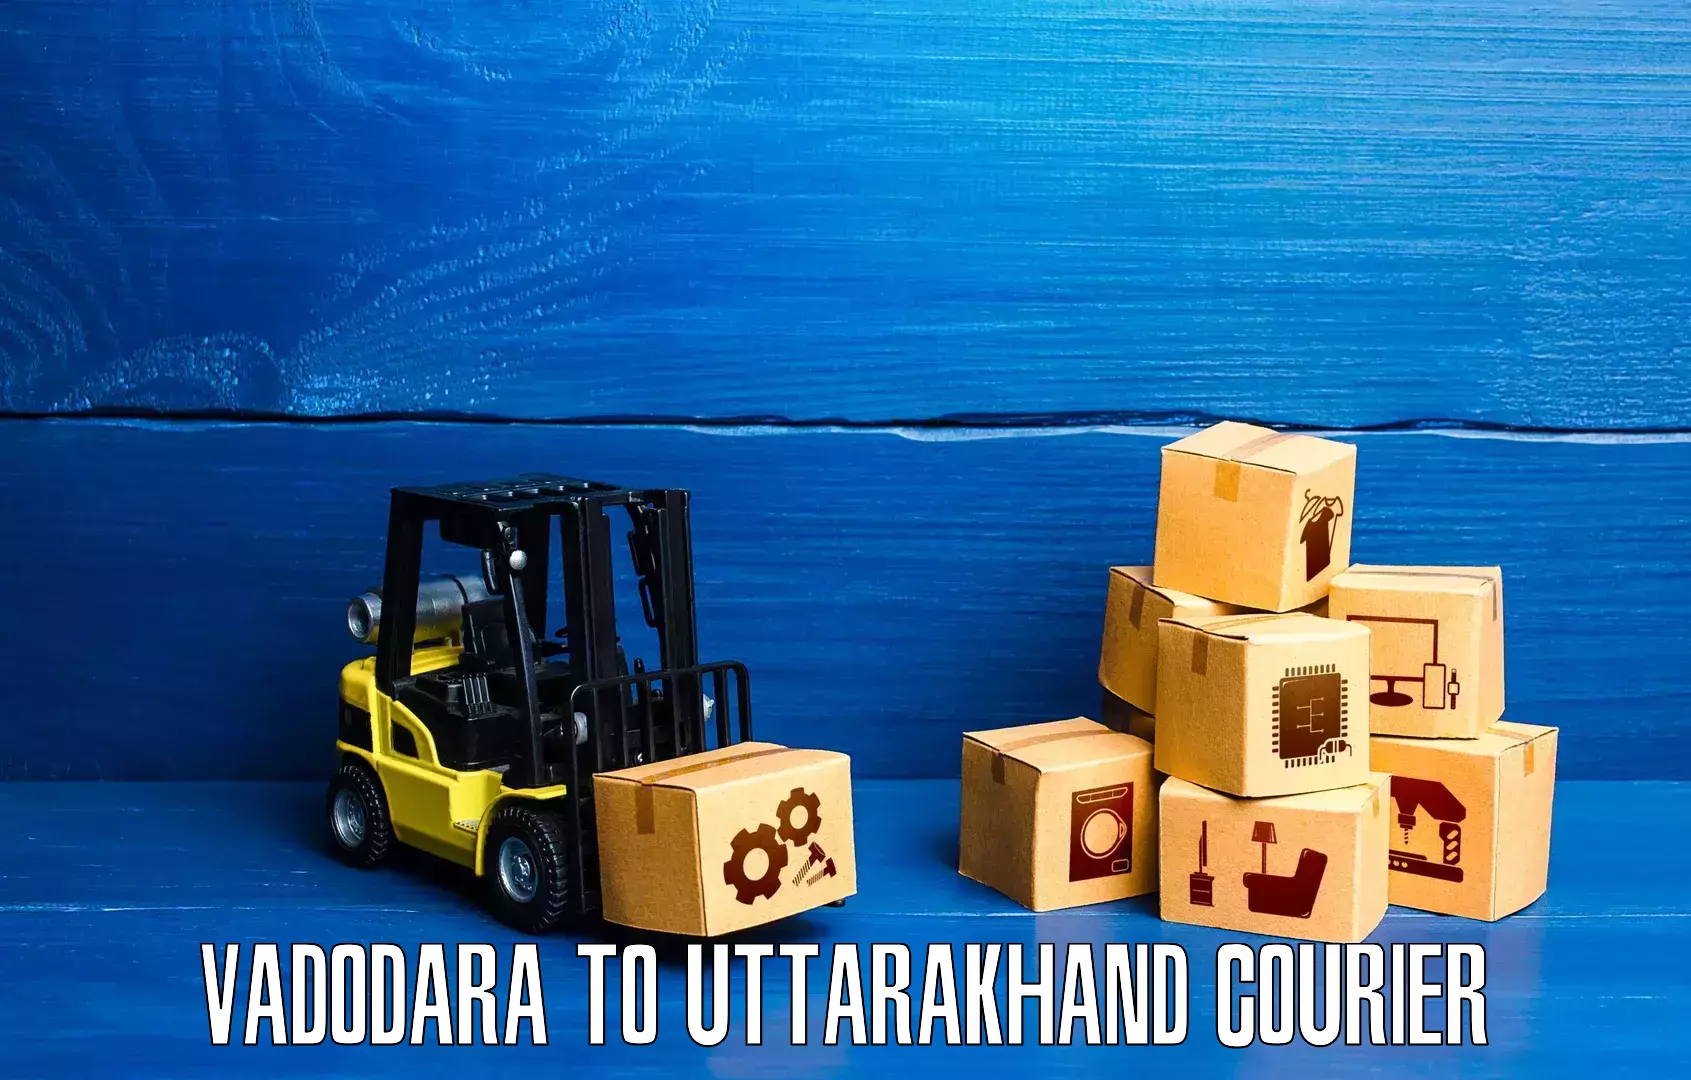 Cash on delivery service Vadodara to Uttarakhand